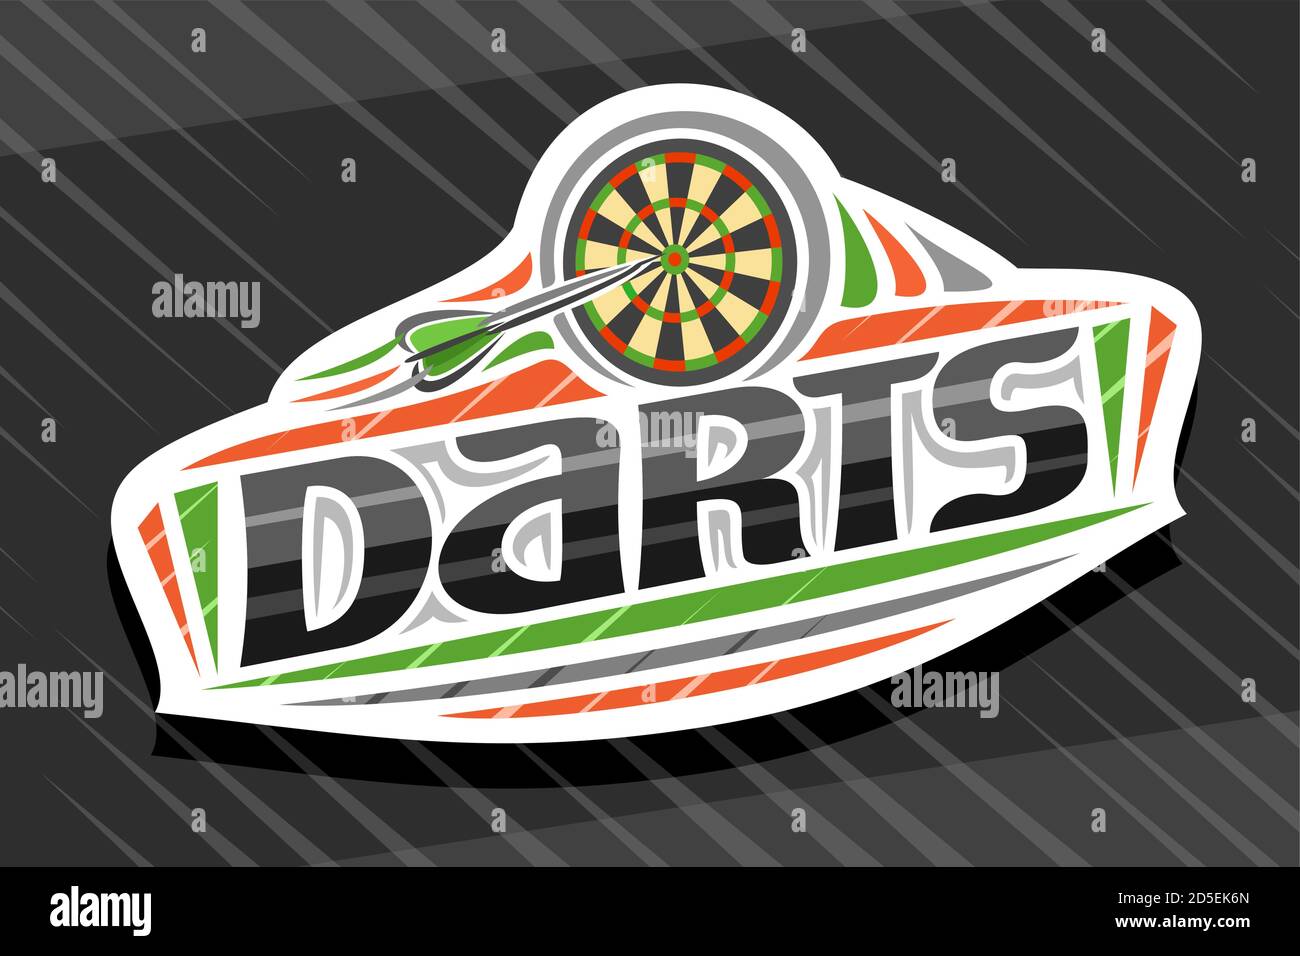 Logo vettoriale per Darts Sport, emblema bianco moderno con illustrazione di freccette volanti freccia nel bersaglio, scritta unica per freccette di parola nera, segno sportivo Illustrazione Vettoriale